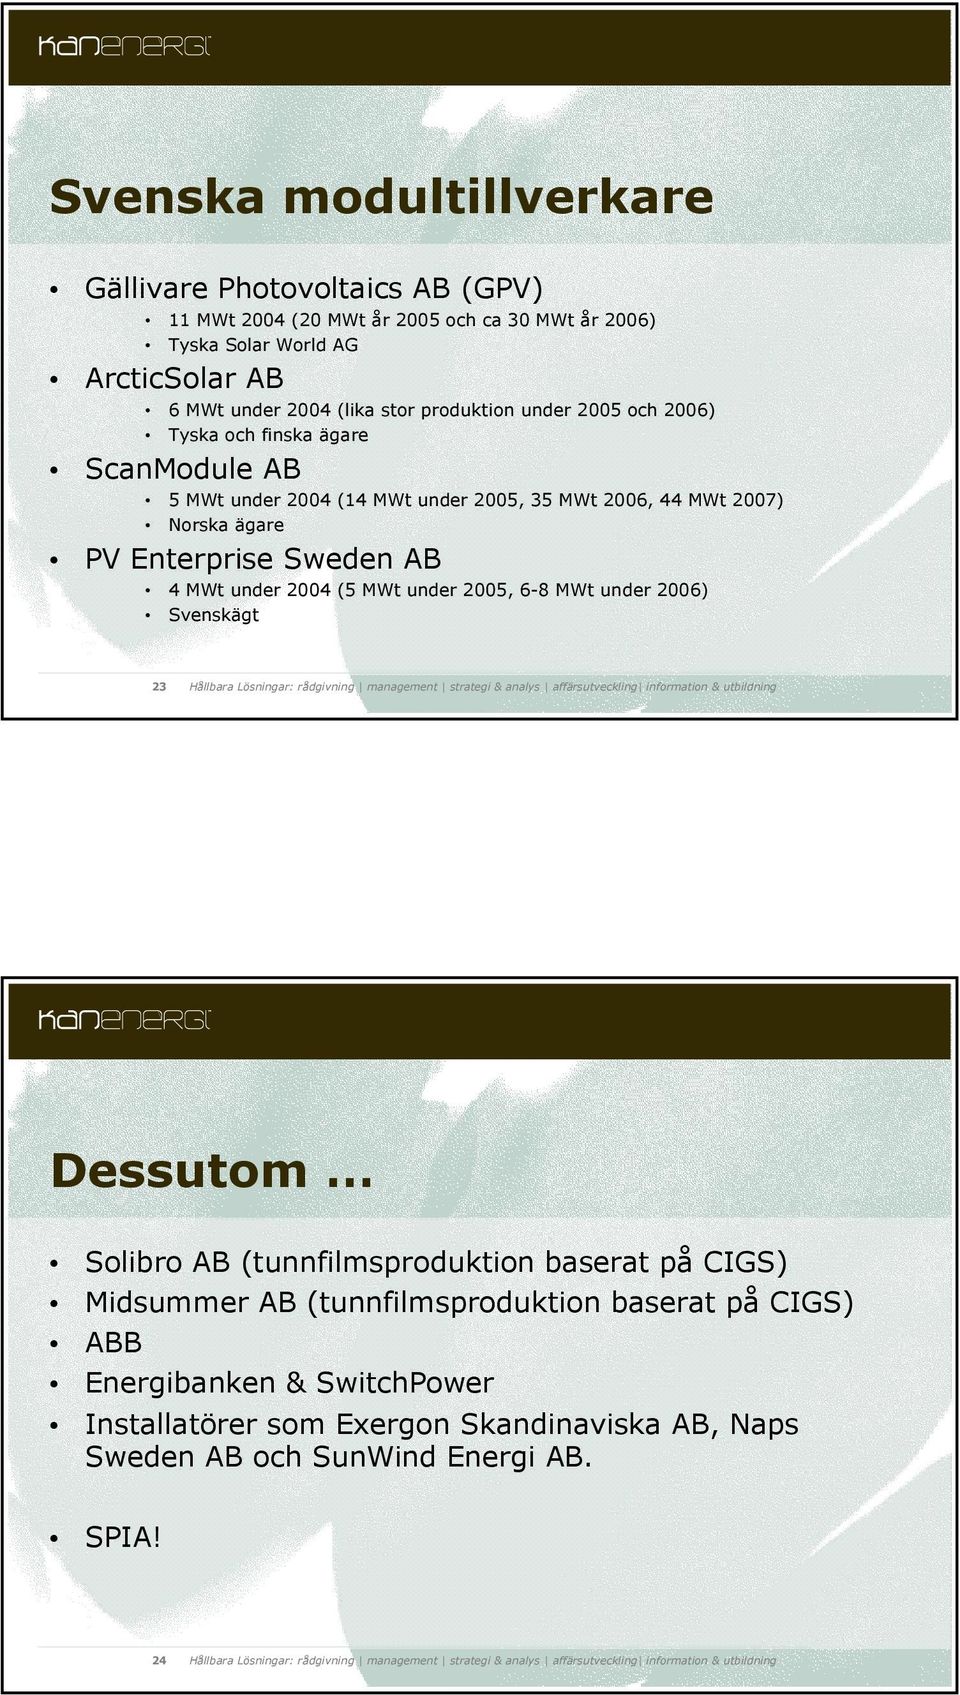 PV Enterprise Sweden AB 4 MWt under 2004 (5 MWt under 2005, 6-8 MWt under 2006) Svenskägt 23 Dessutom Solibro AB (tunnfilmsproduktion baserat på CIGS) Midsummer